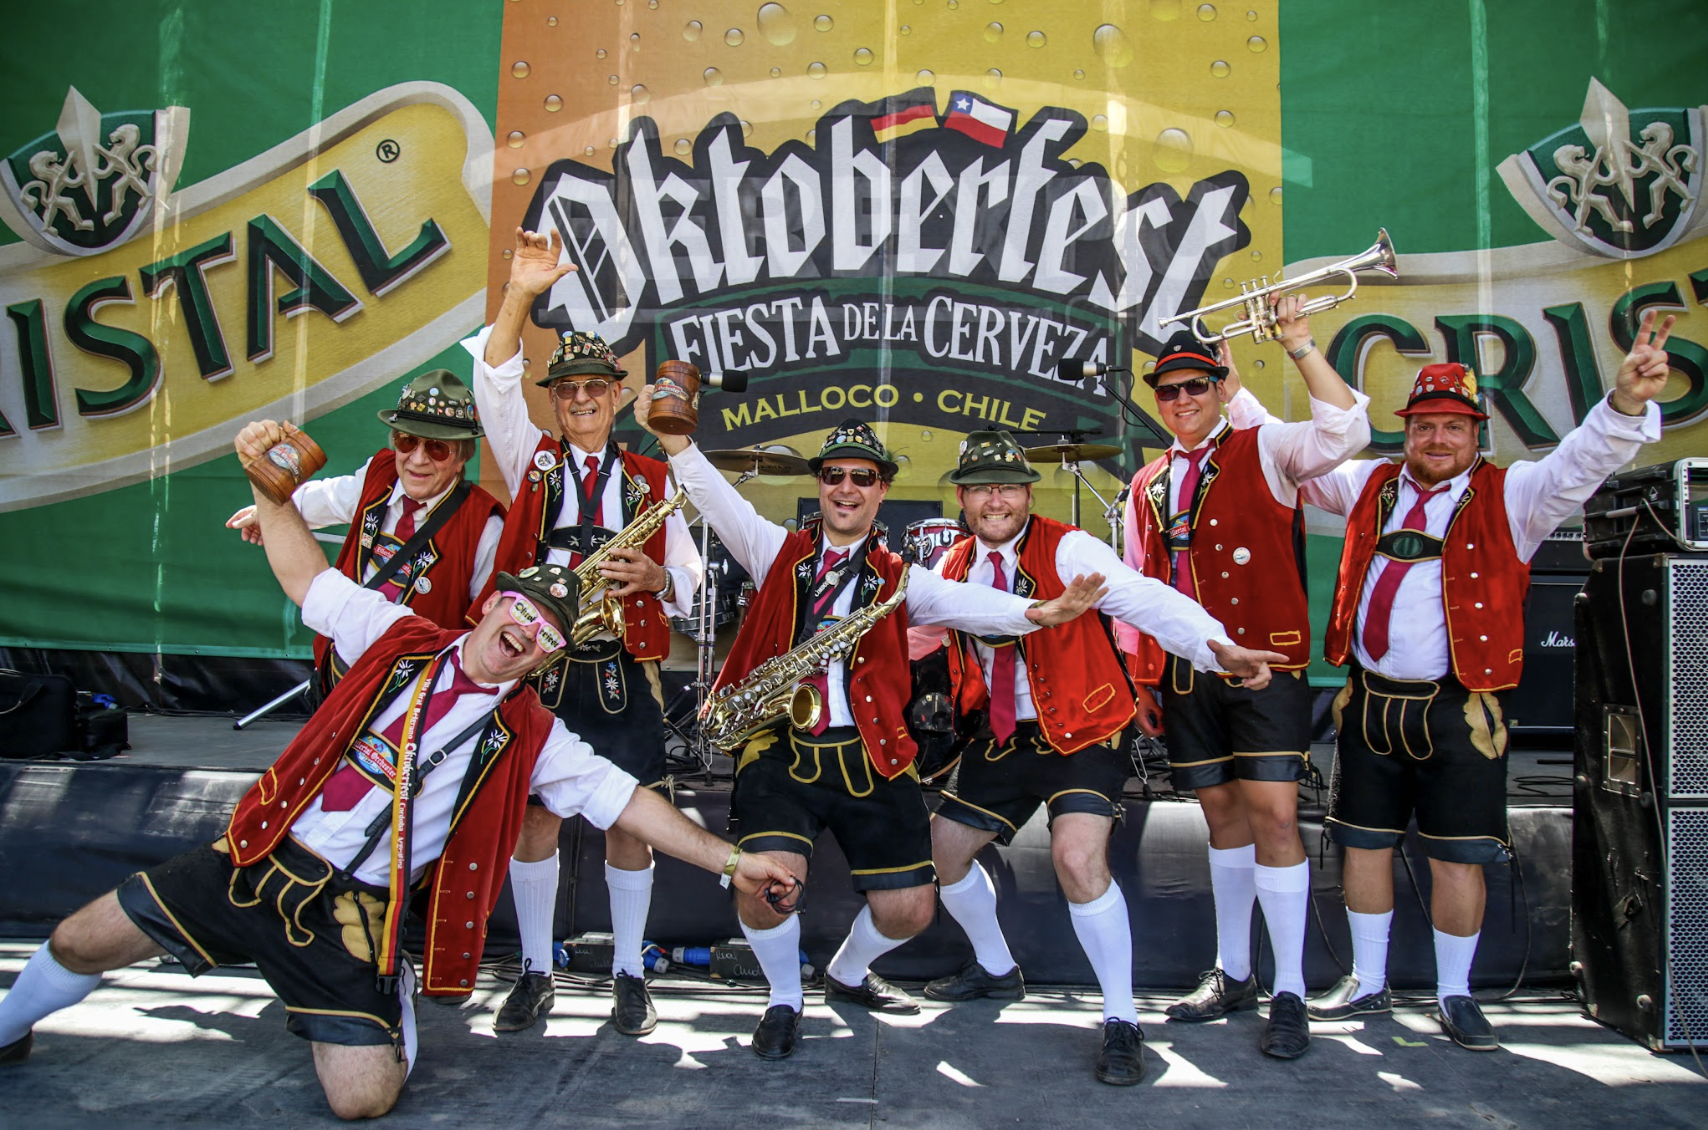 ¡Confirmado Oktoberfest Chile 2022!: La tradicional fiesta de la cerveza, vuelve recargada después de dos años de ausencia